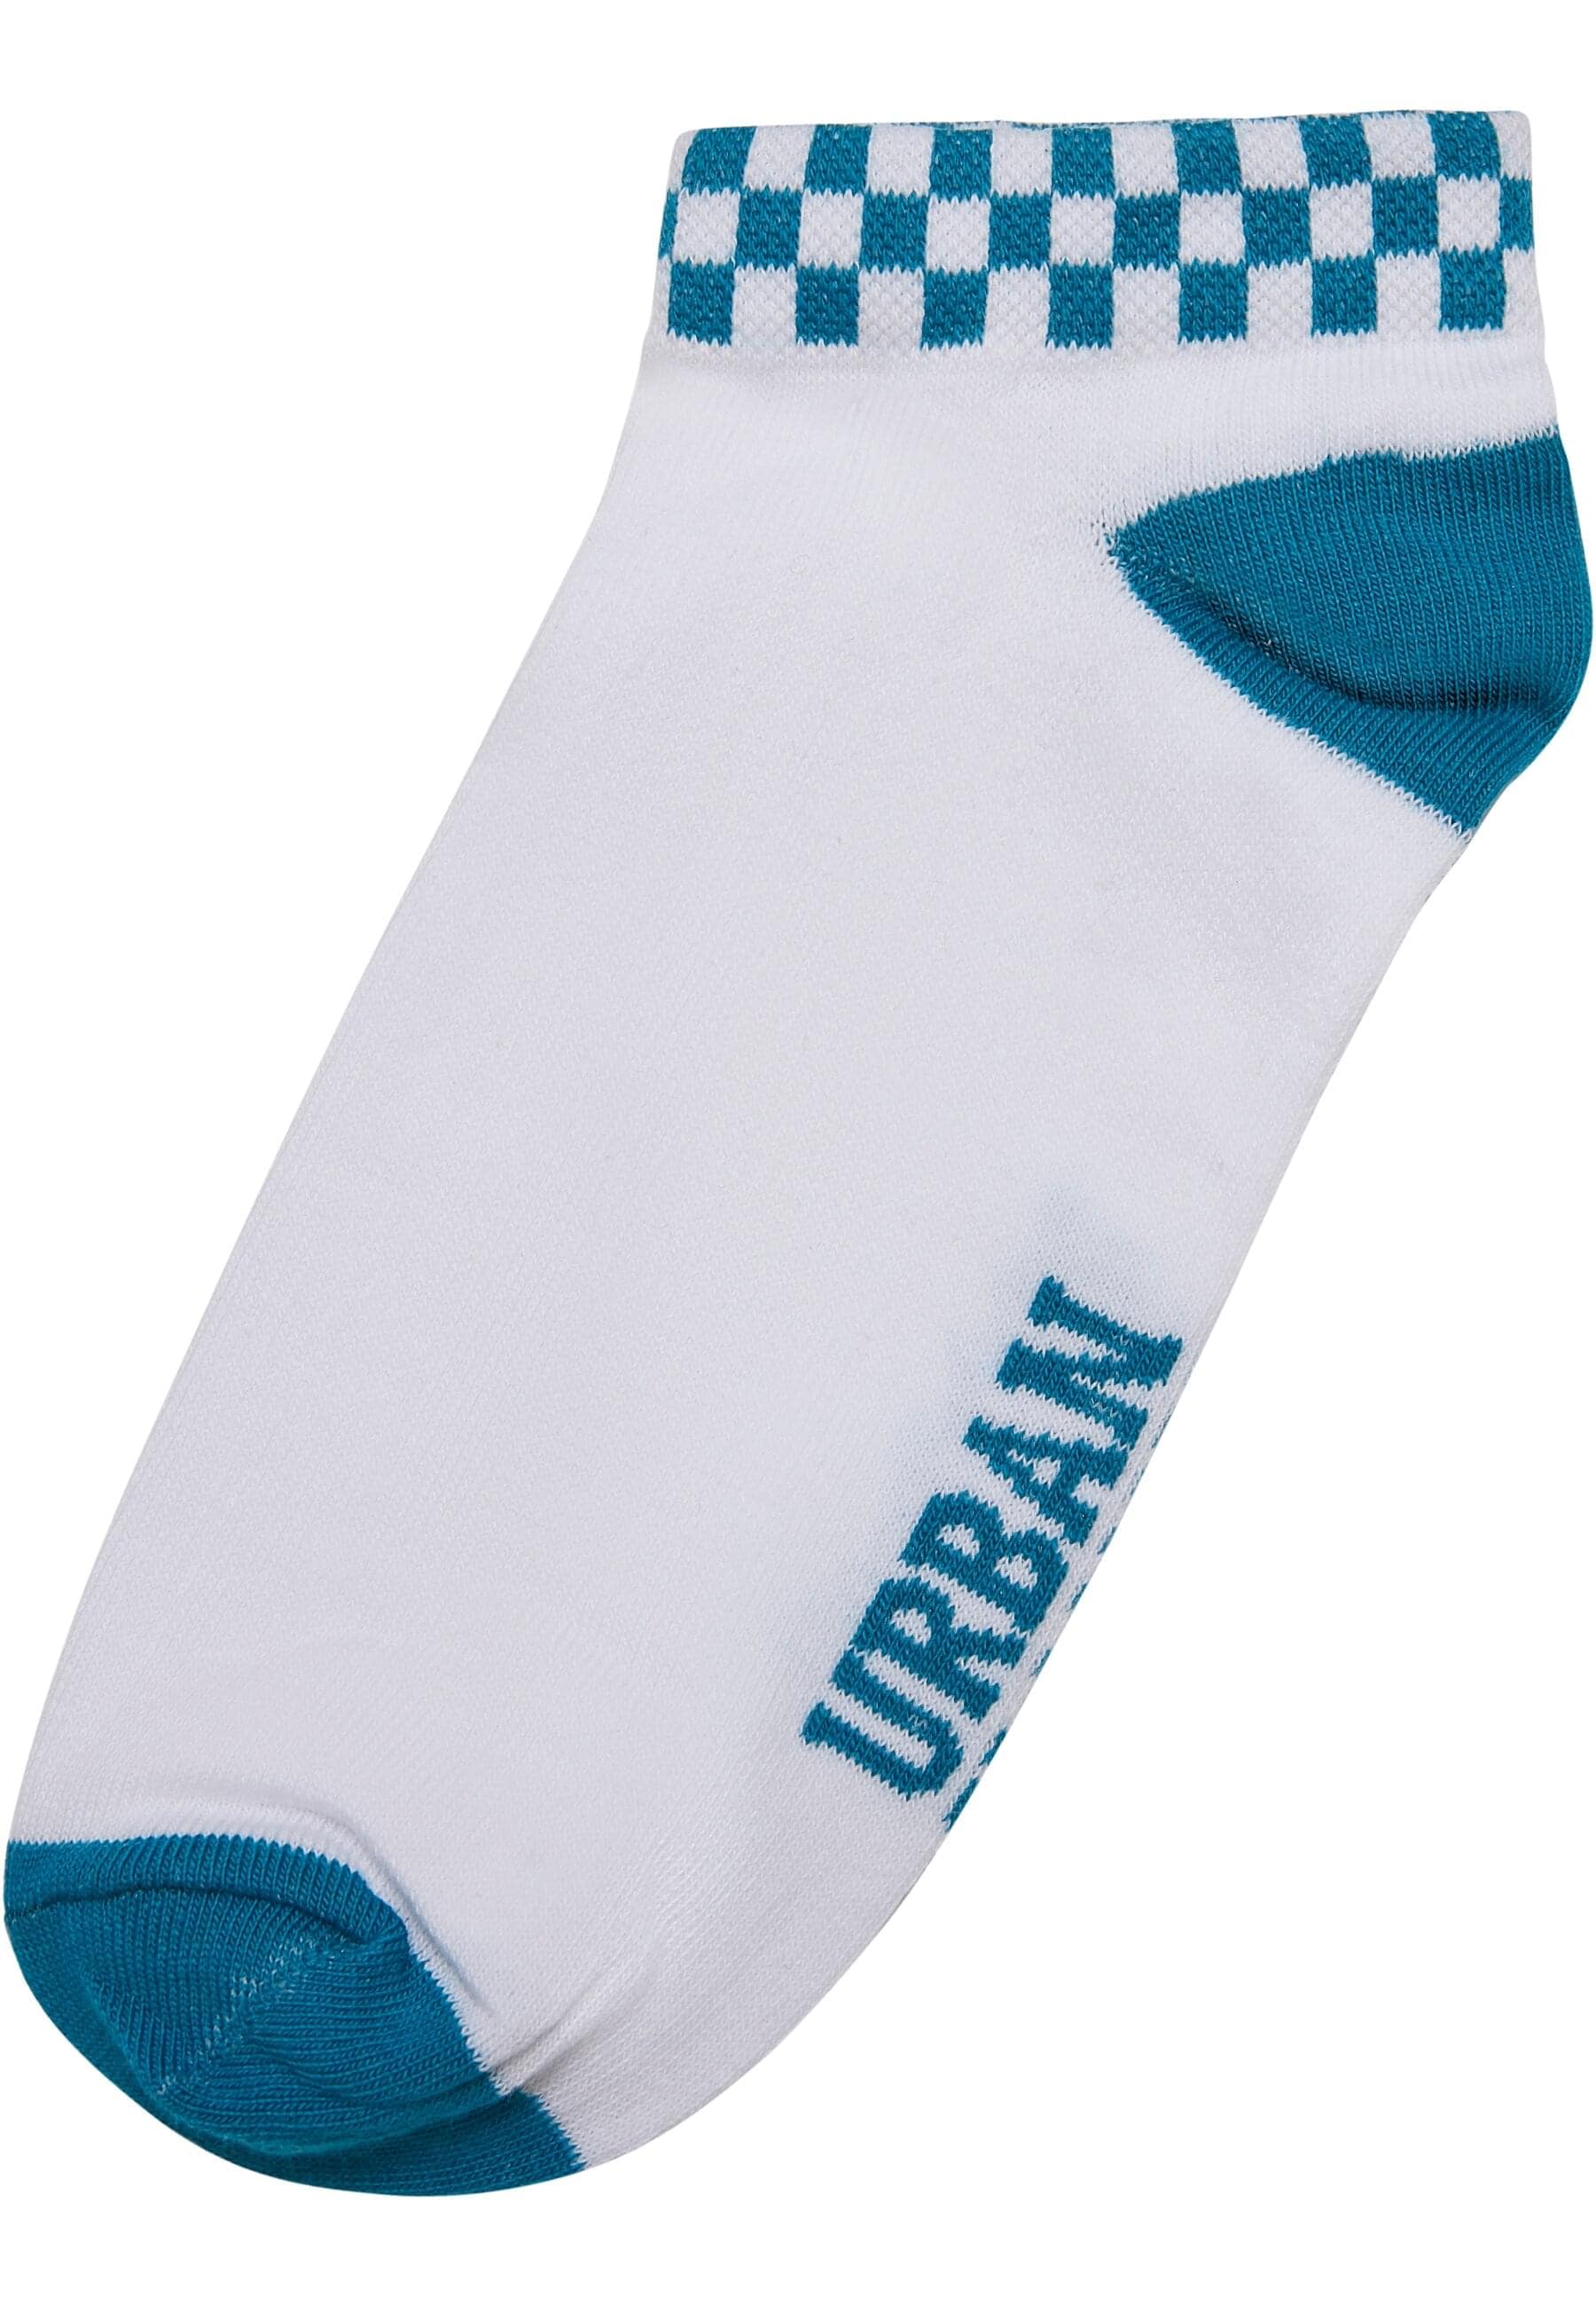 URBAN CLASSICS Strümpfe »Urban Classics Unisex Sneaker Socks Checks 3-Pack«, (1 Paar)